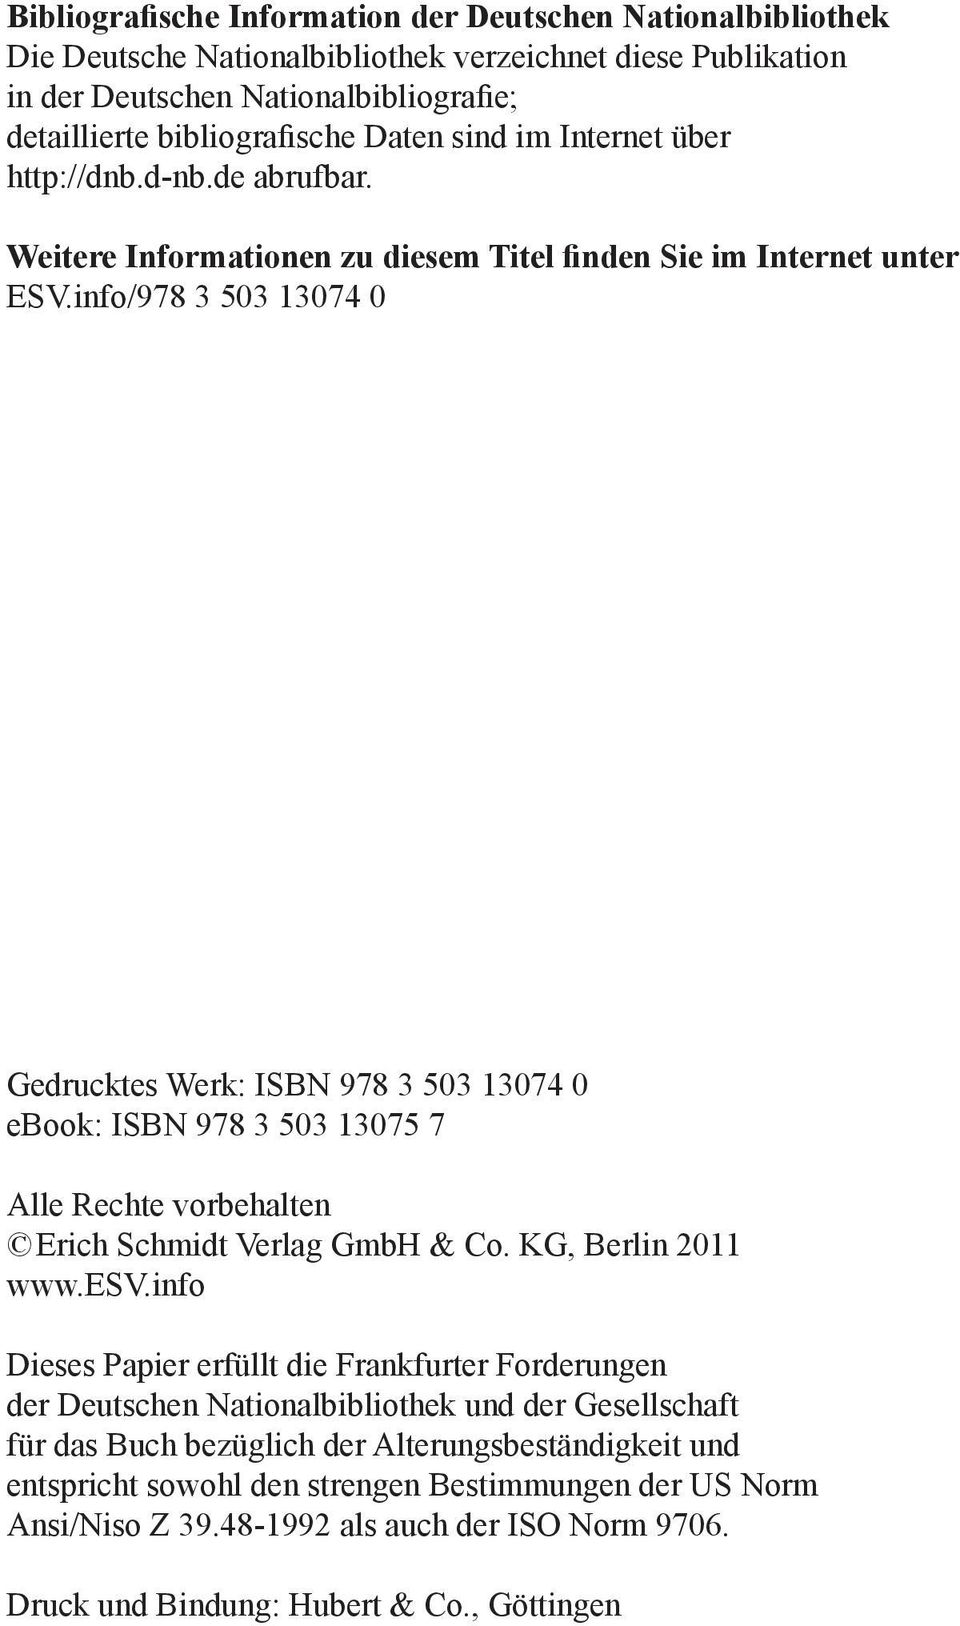 info/978 3 503 13074 0 Gedrucktes Werk: ISBN 978 3 503 13074 0 ebook: ISBN 978 3 503 13075 7 Alle Rechte vorbehalten Erich Schmidt Verlag GmbH & Co. KG, Berlin 2011 www.esv.